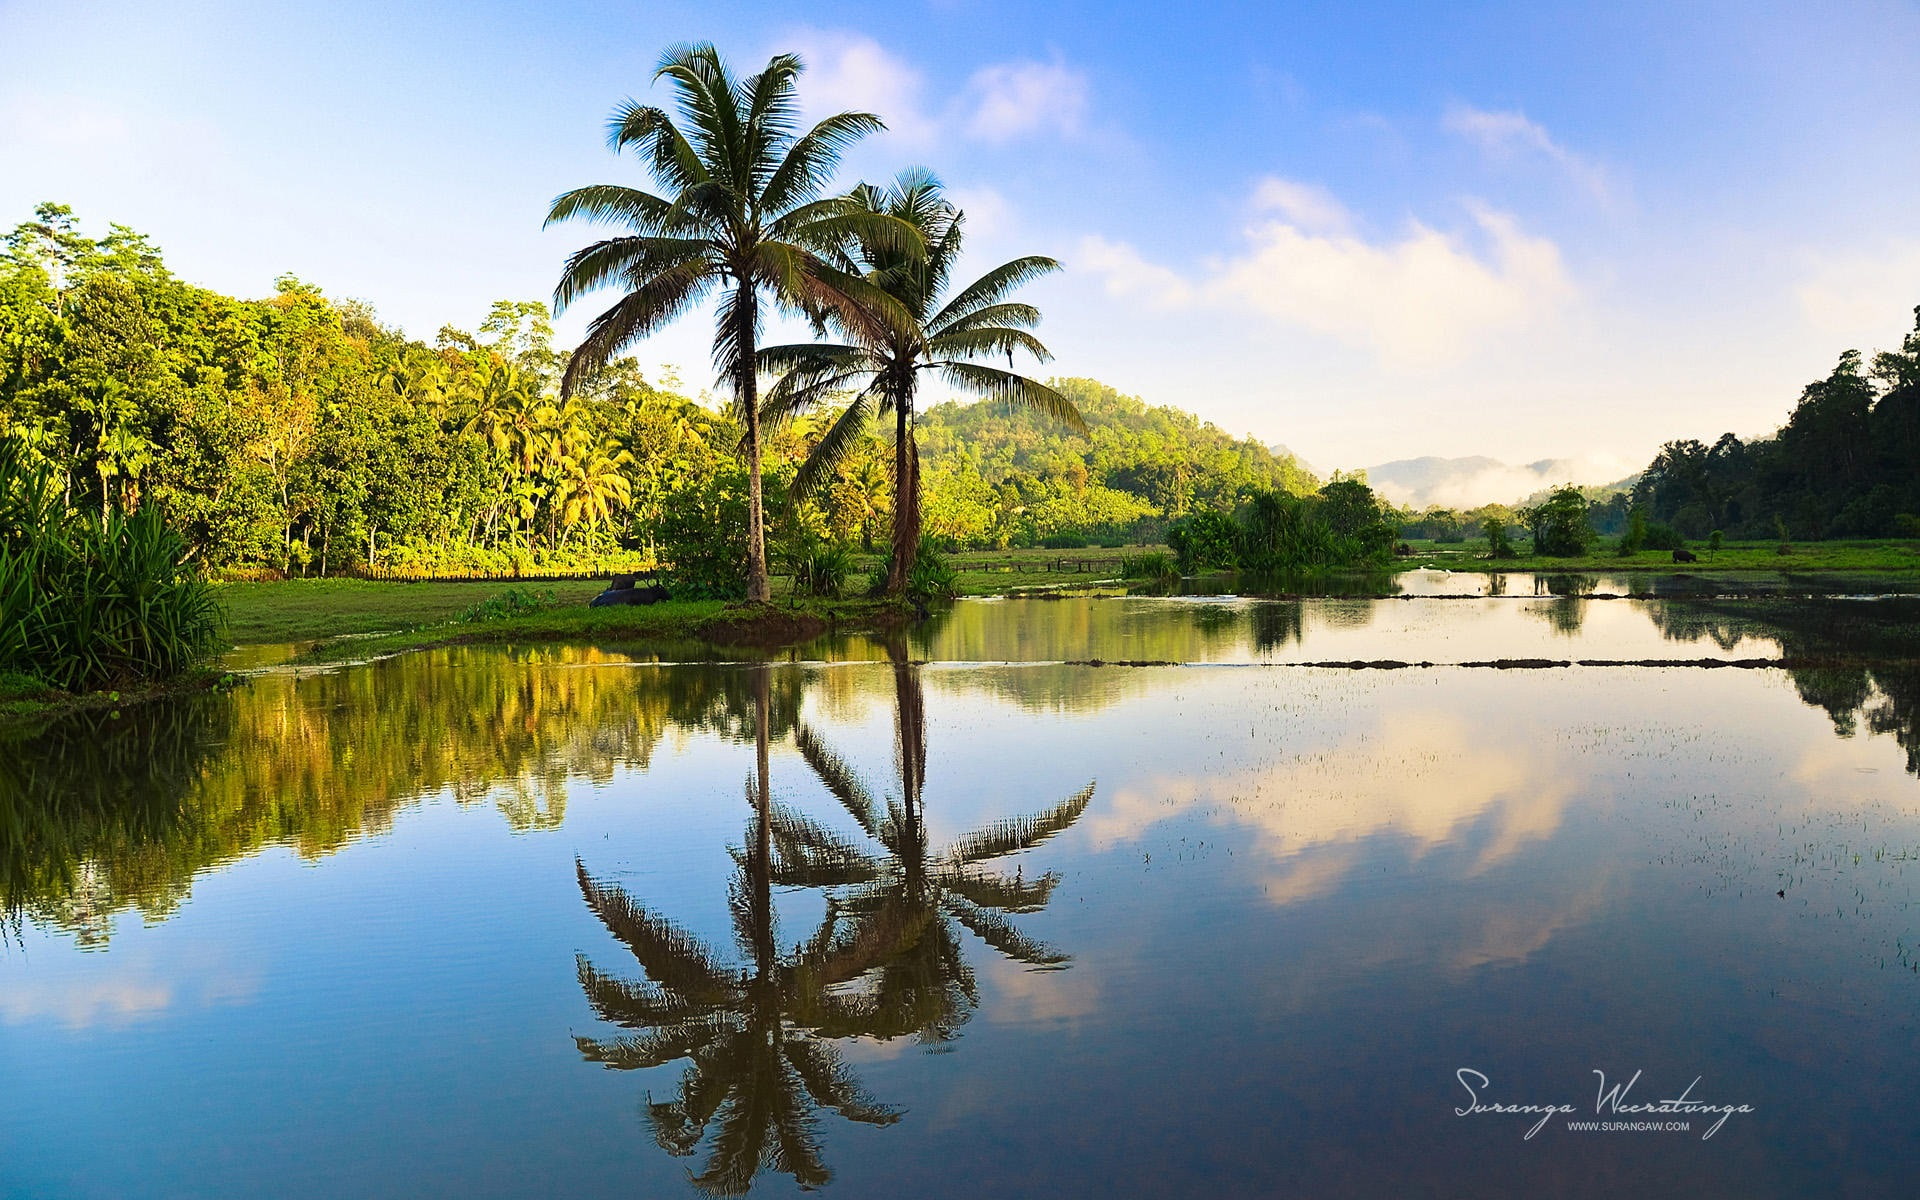 Coco reflection-Sri Lanka Win8 wallpaper, coconut trees, plant